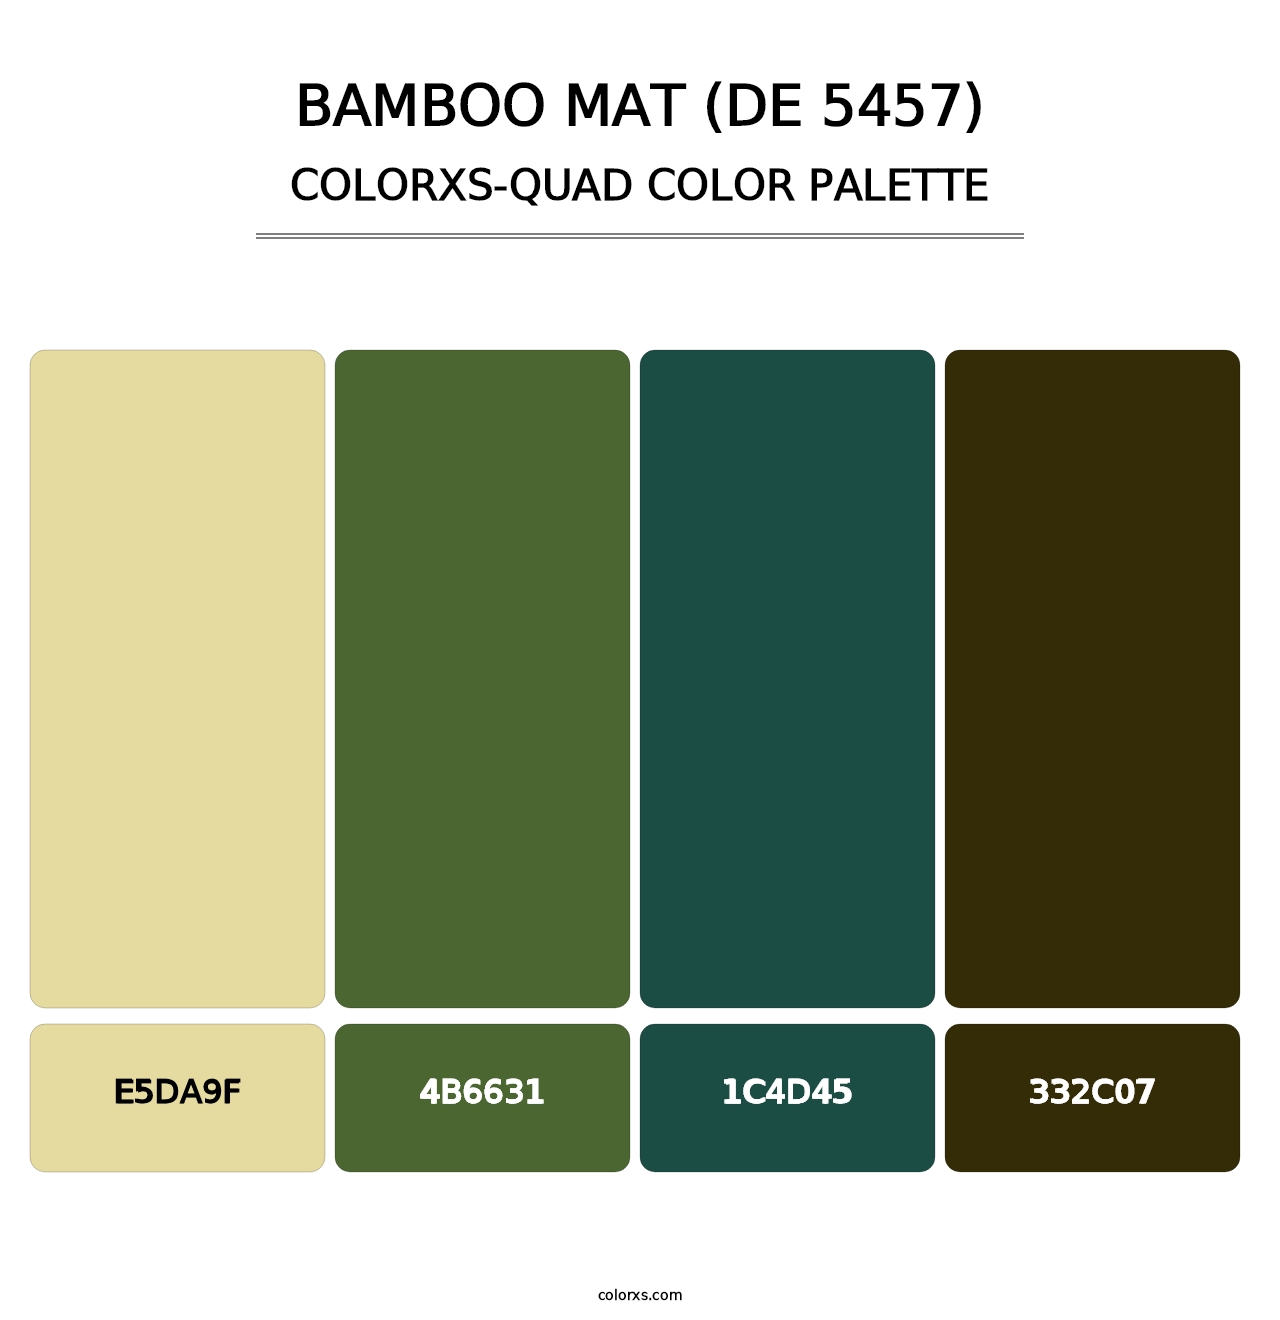 Bamboo Mat (DE 5457) - Colorxs Quad Palette